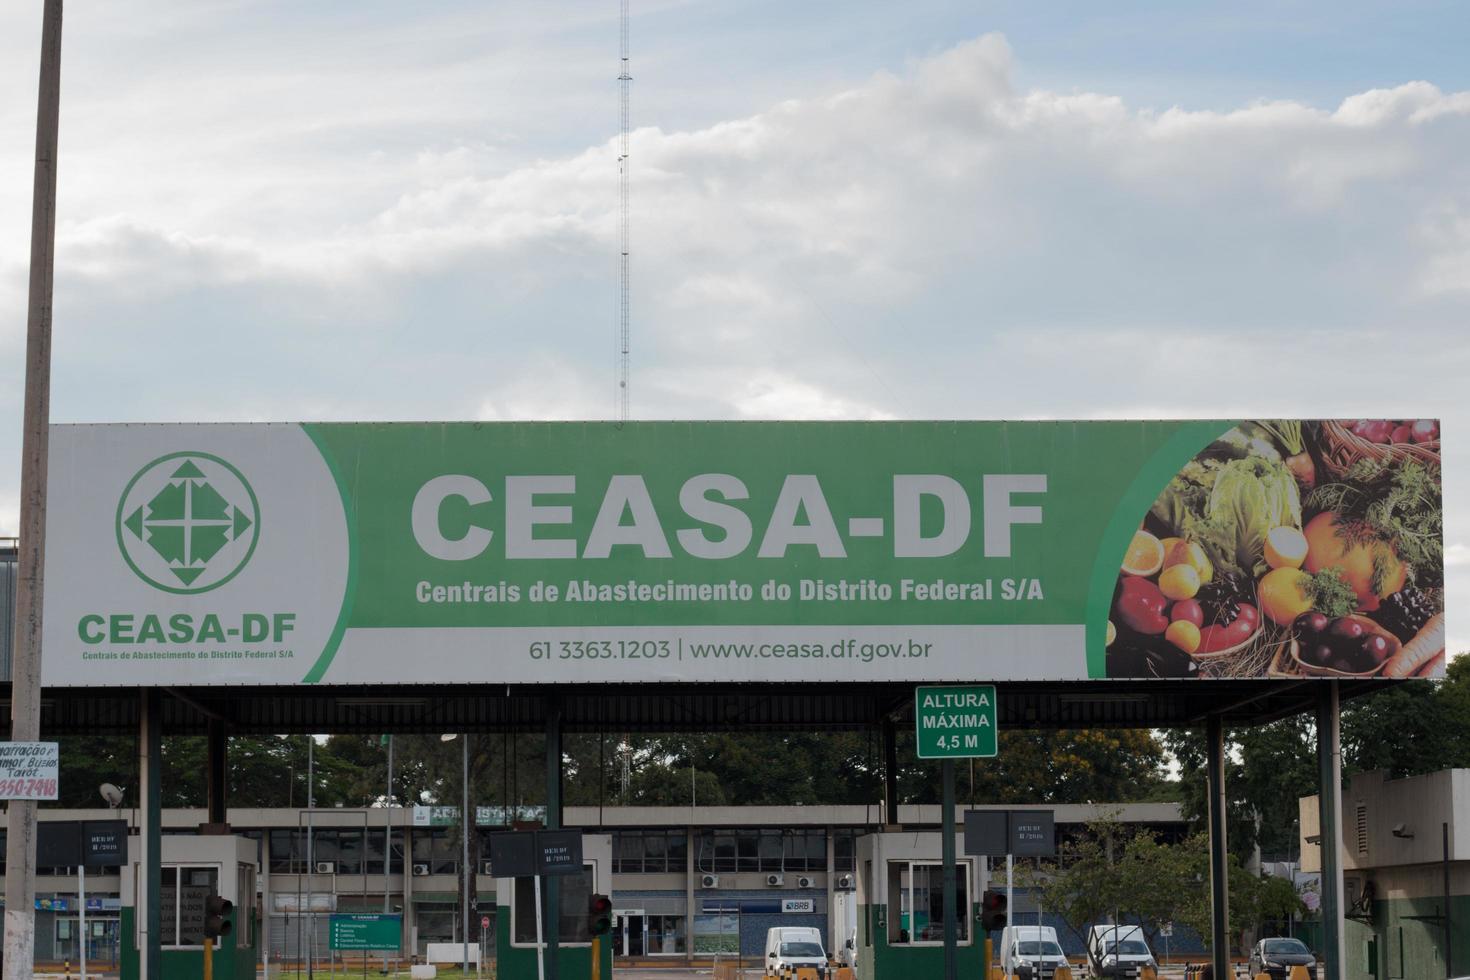 brasilia, df brazil, 25 november 2021 toegang tot de ceasa-df groothandelsmarkten in brasilia foto